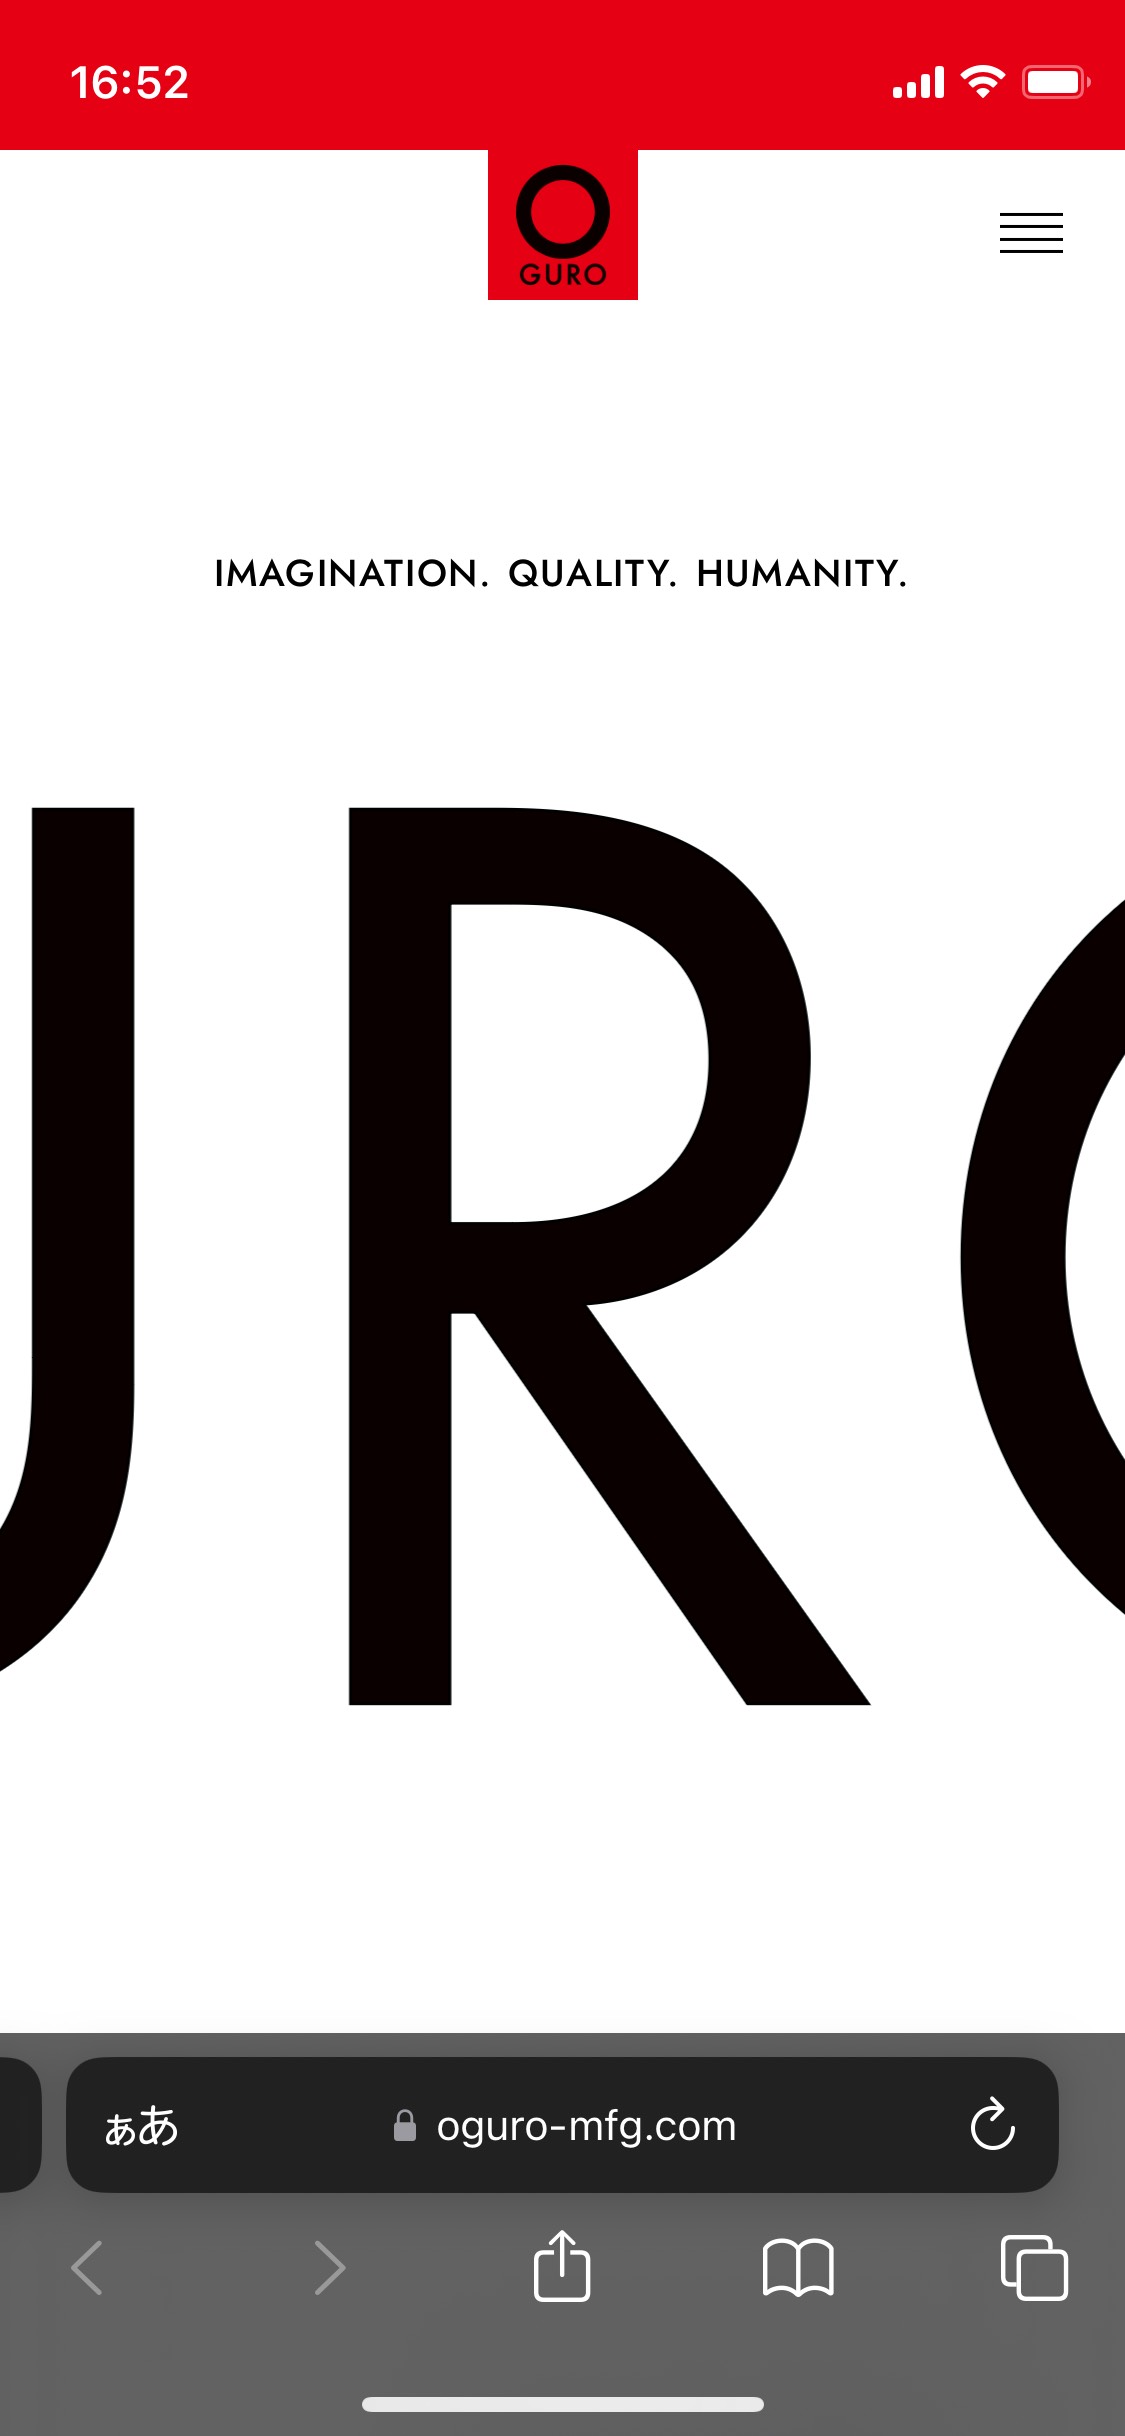 OGURO Inc.のサイト